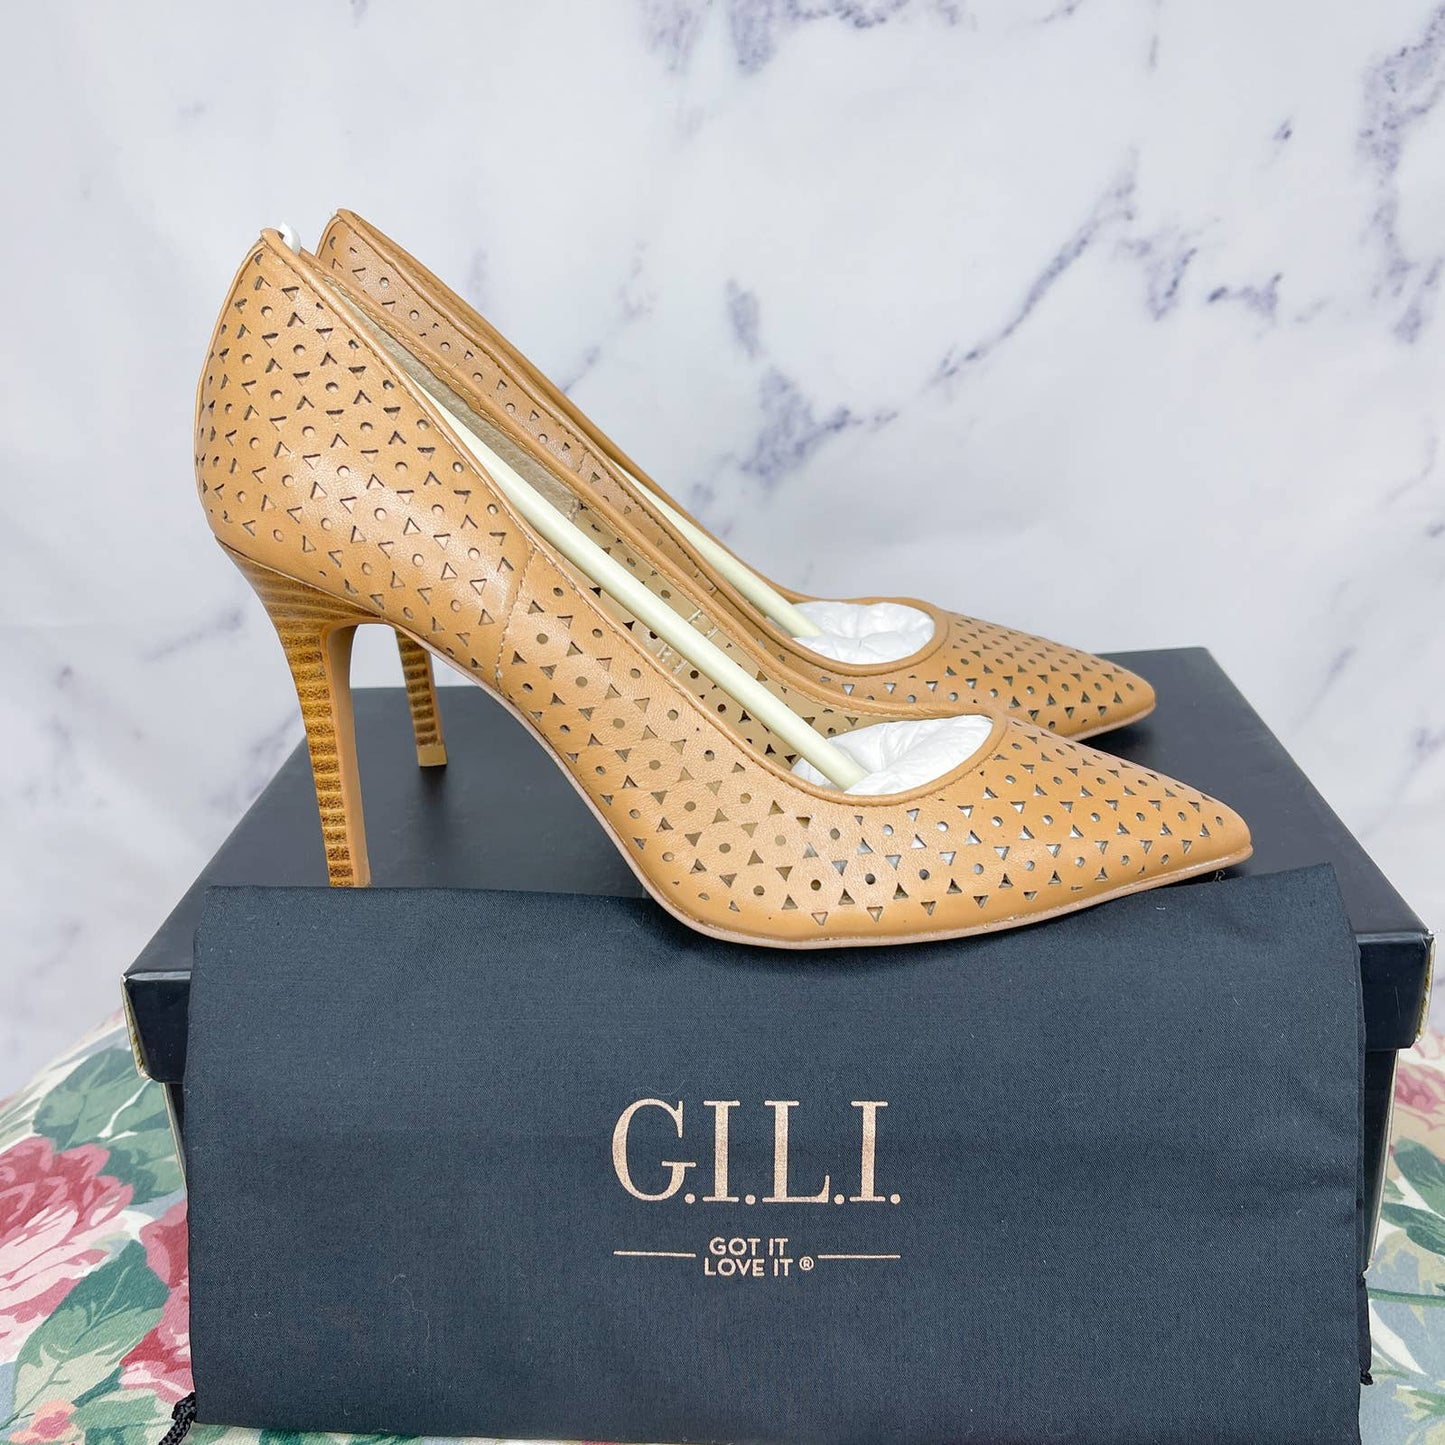 G.I.L.I. | Jill Tan Laser Cutout Pump Heels | Sz 8.5